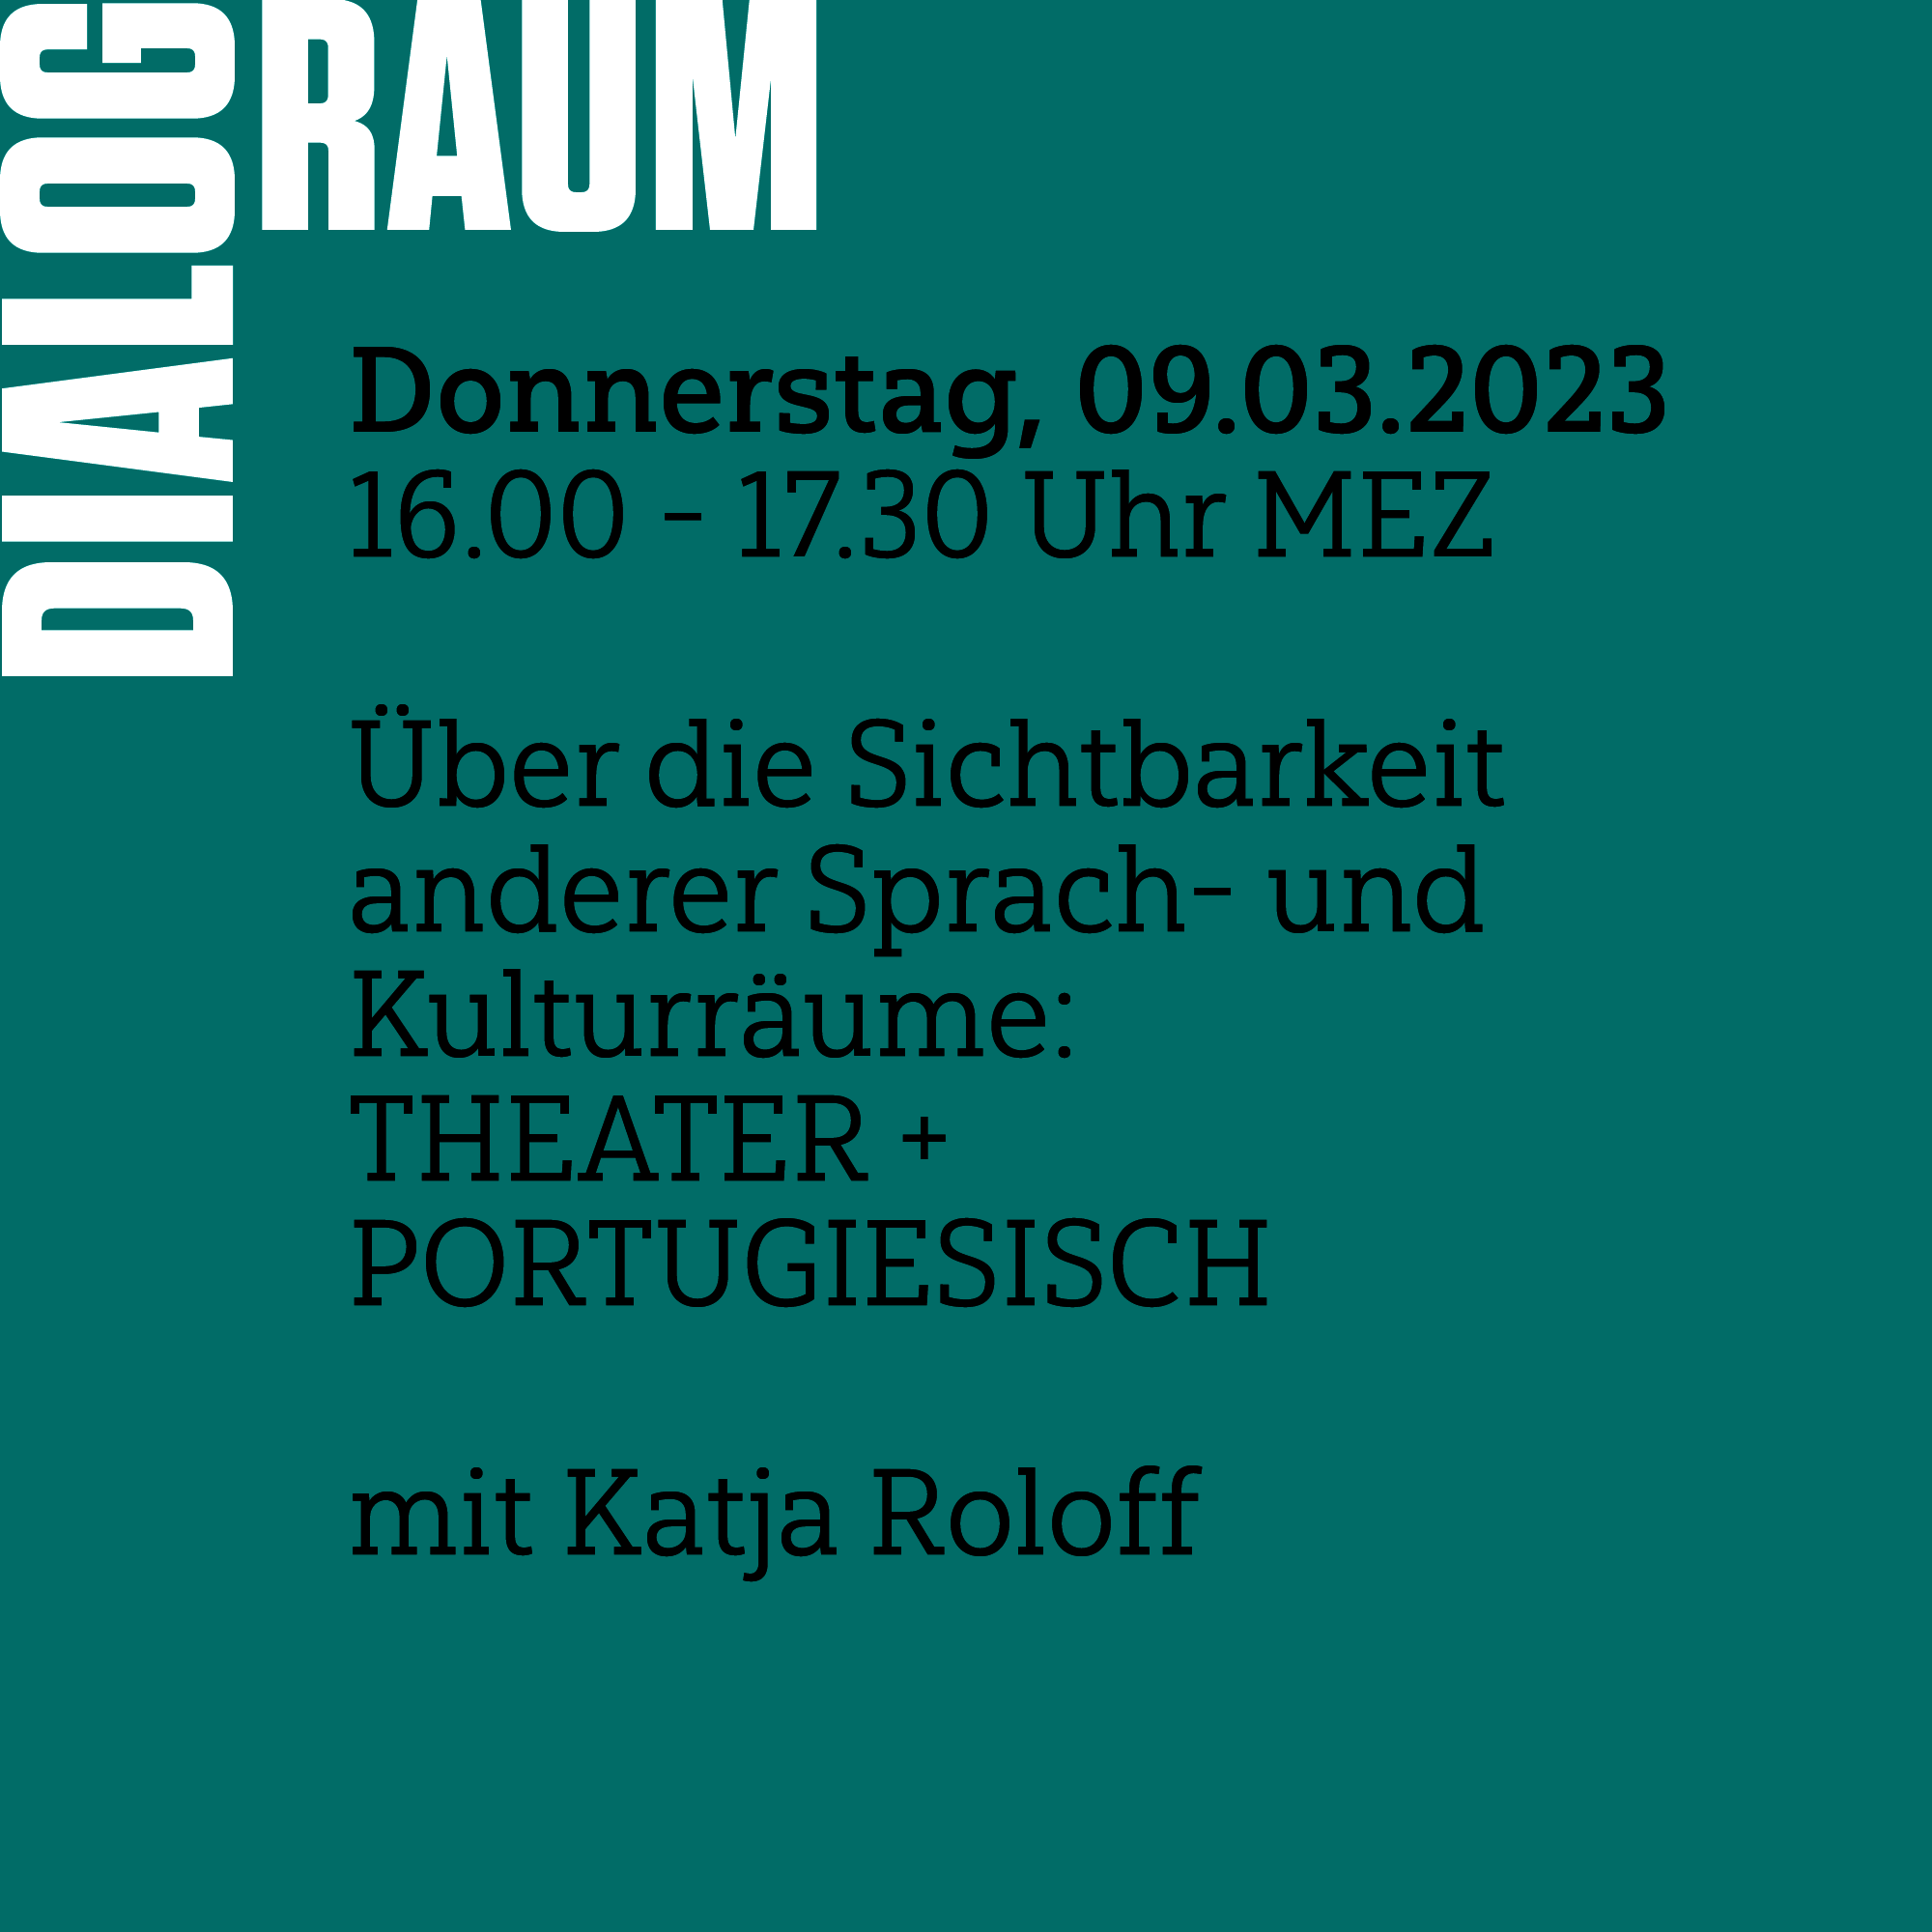 DIALOGRAUM: ÜBER DIE SICHTBARKEIT ANDERER SPRACH- UND KULTURRÄUME - THEATER + PORTUGIESISCH  mit Katja Roloff  09.03.2023 von 16.00 - 17.30 MEZ